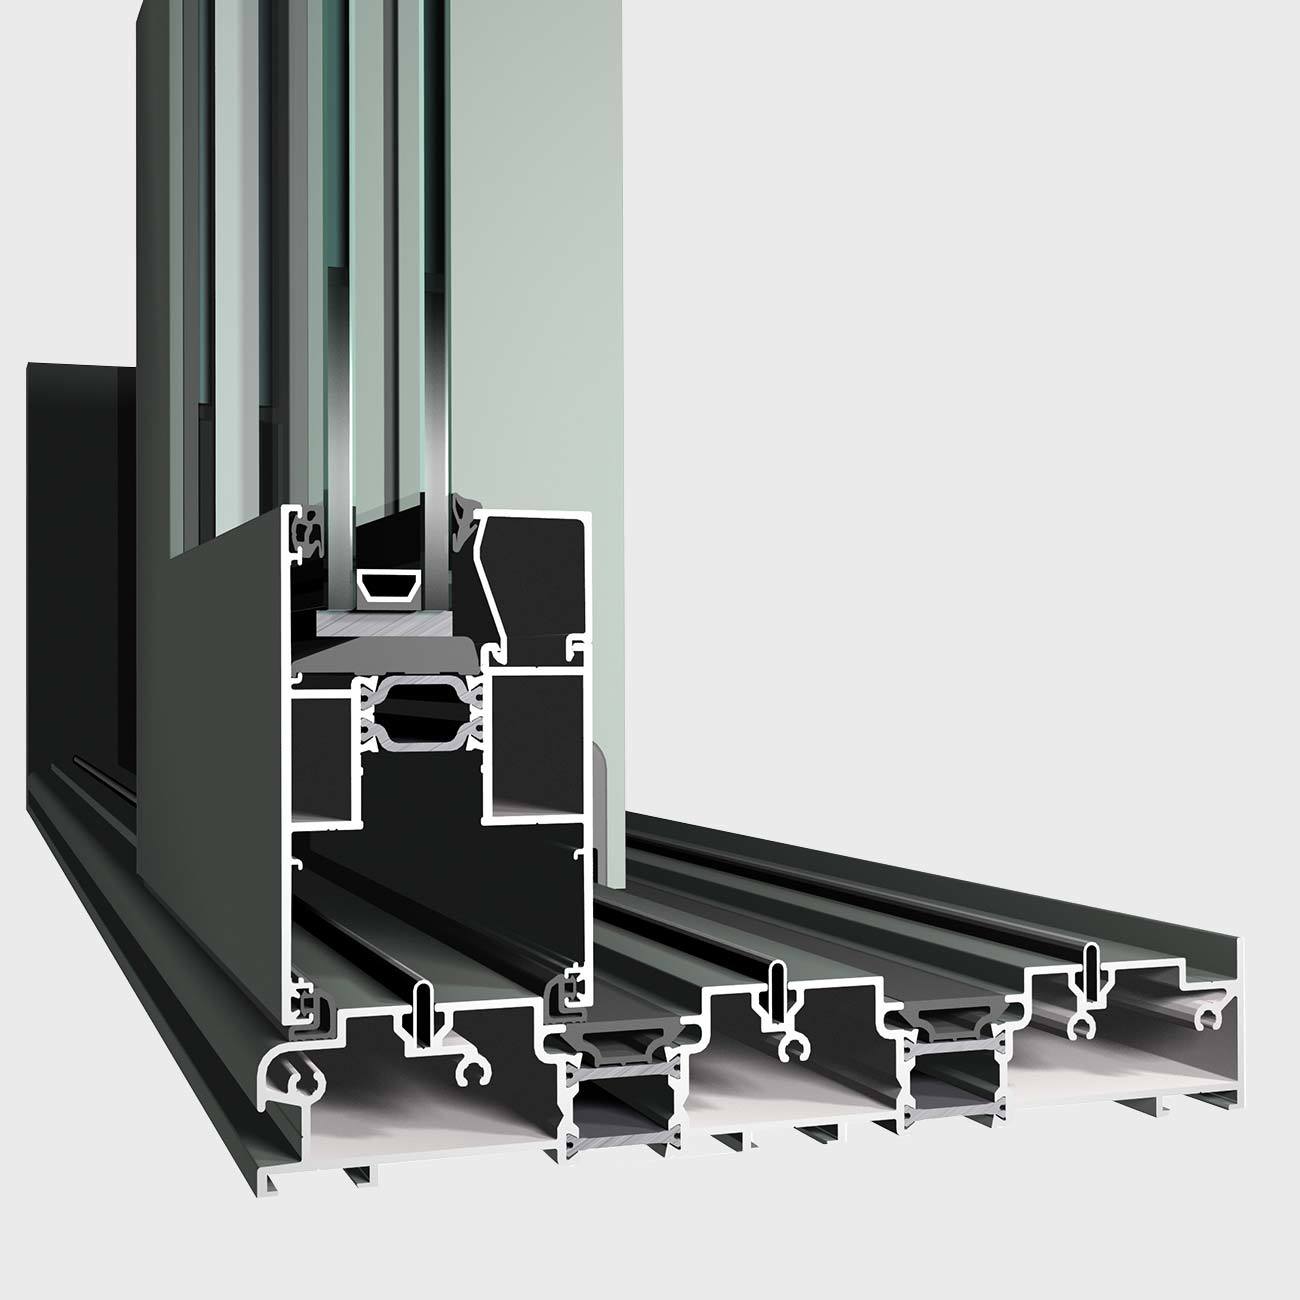 Modern Design Windows & Doors Aluminum Profiles Aluminium Extrusion Profiles ...